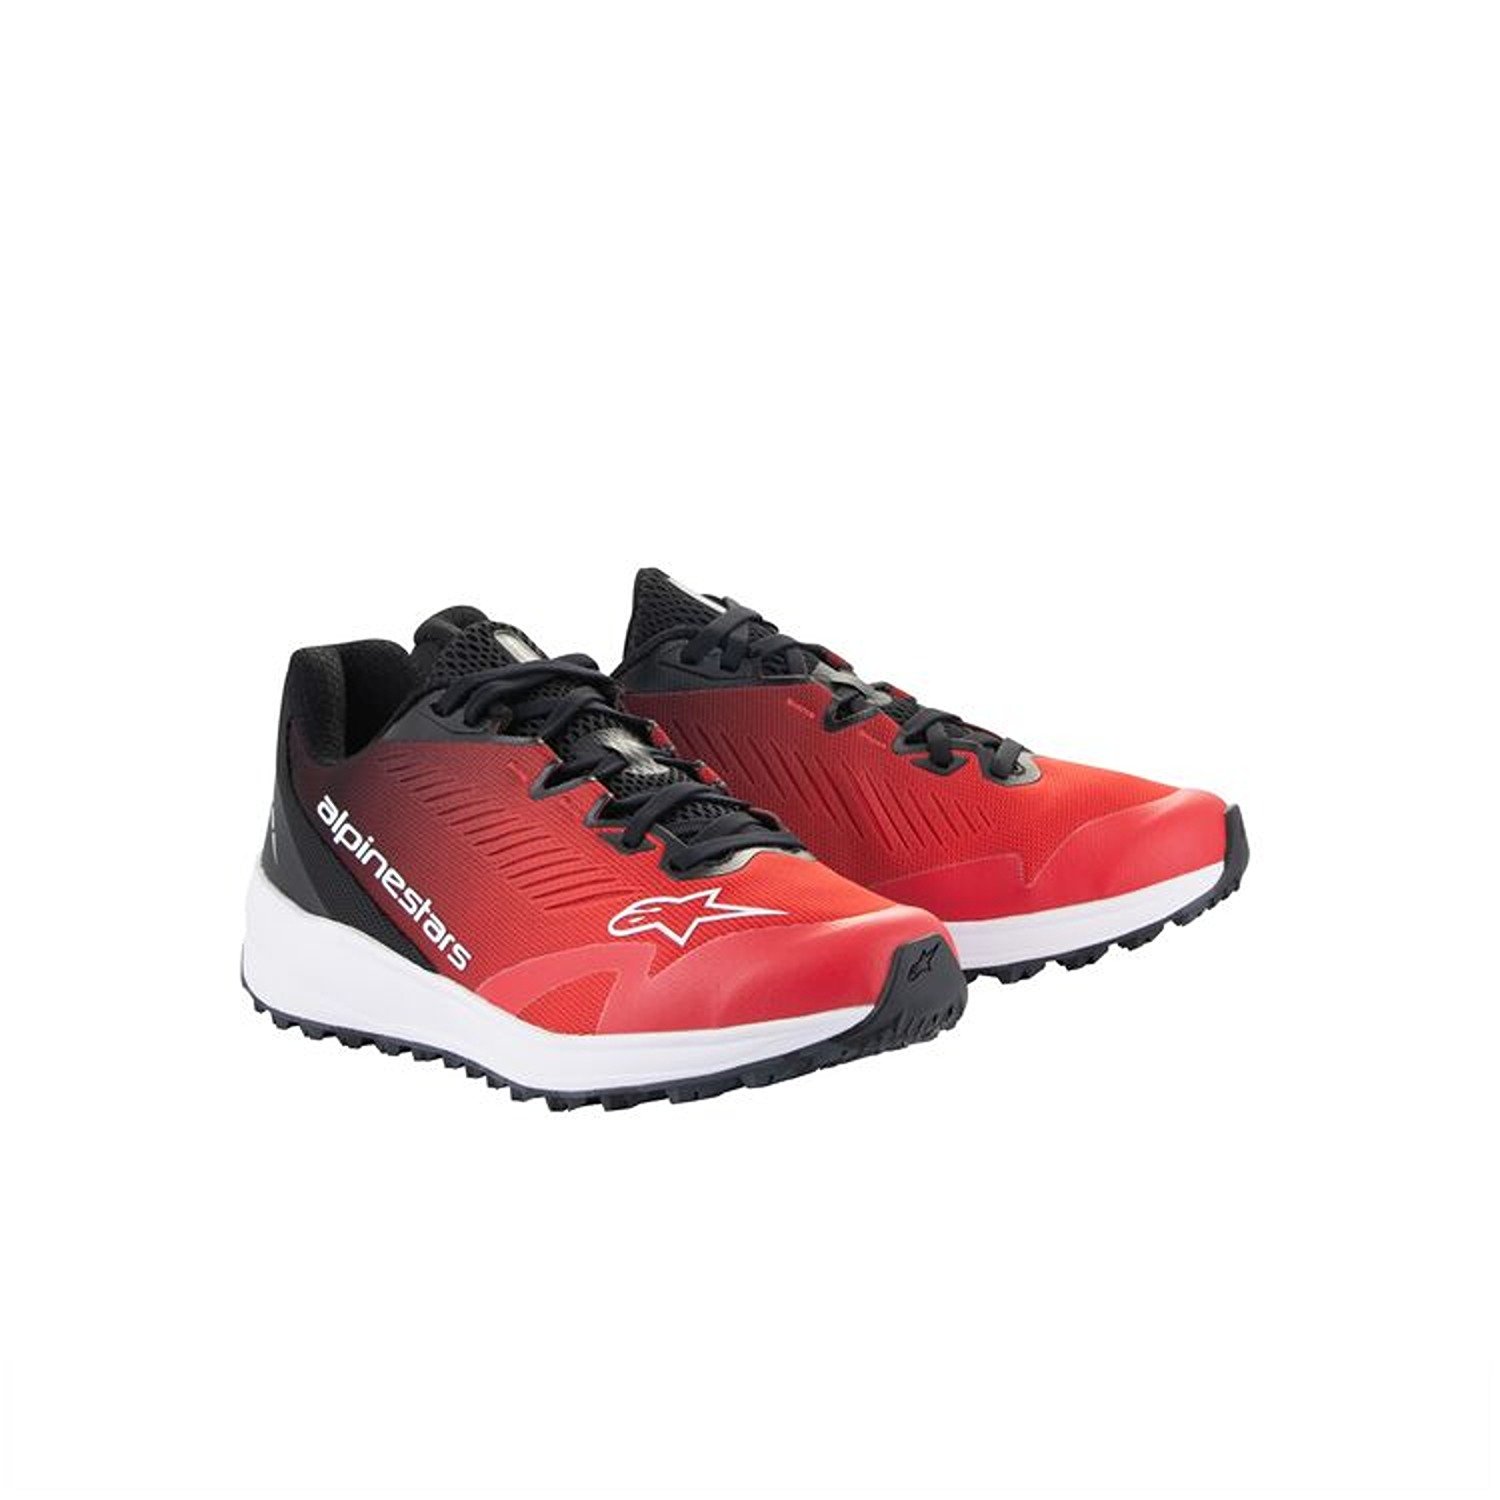 Image of Alpinestars Meta Road V2 Shoes Red Black White Größe US 105